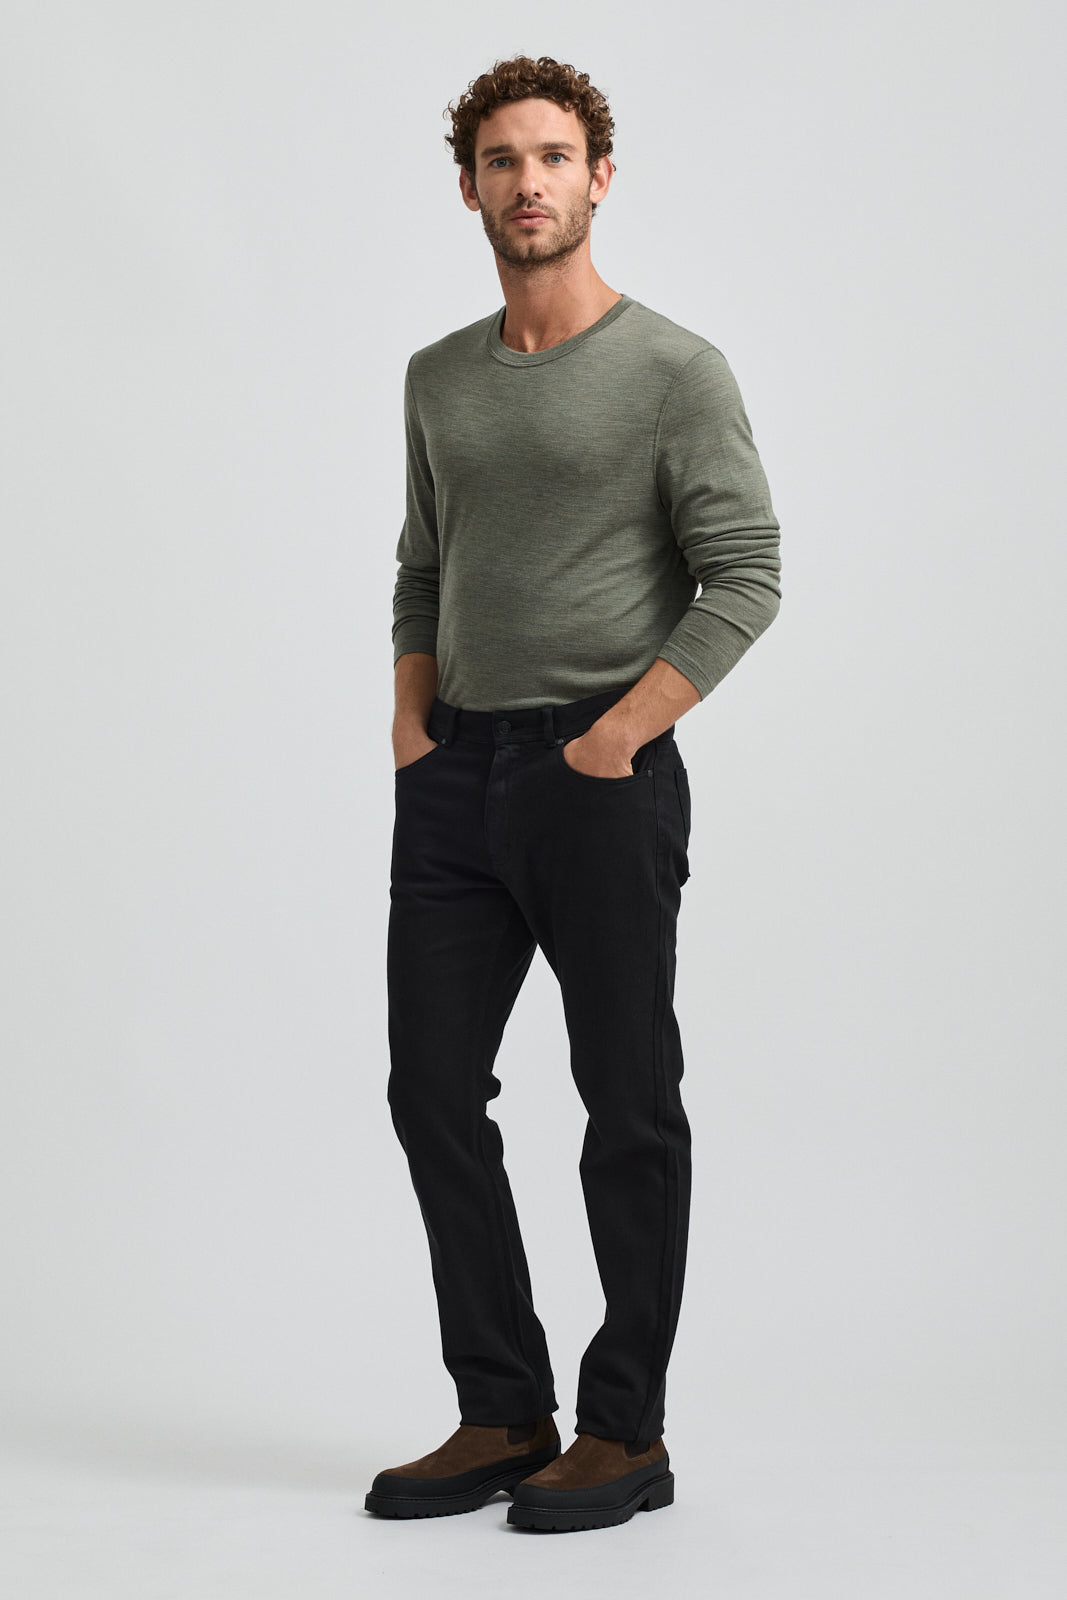 Buy Men's Merino Wool Denim Jeans – Toorallie Australia